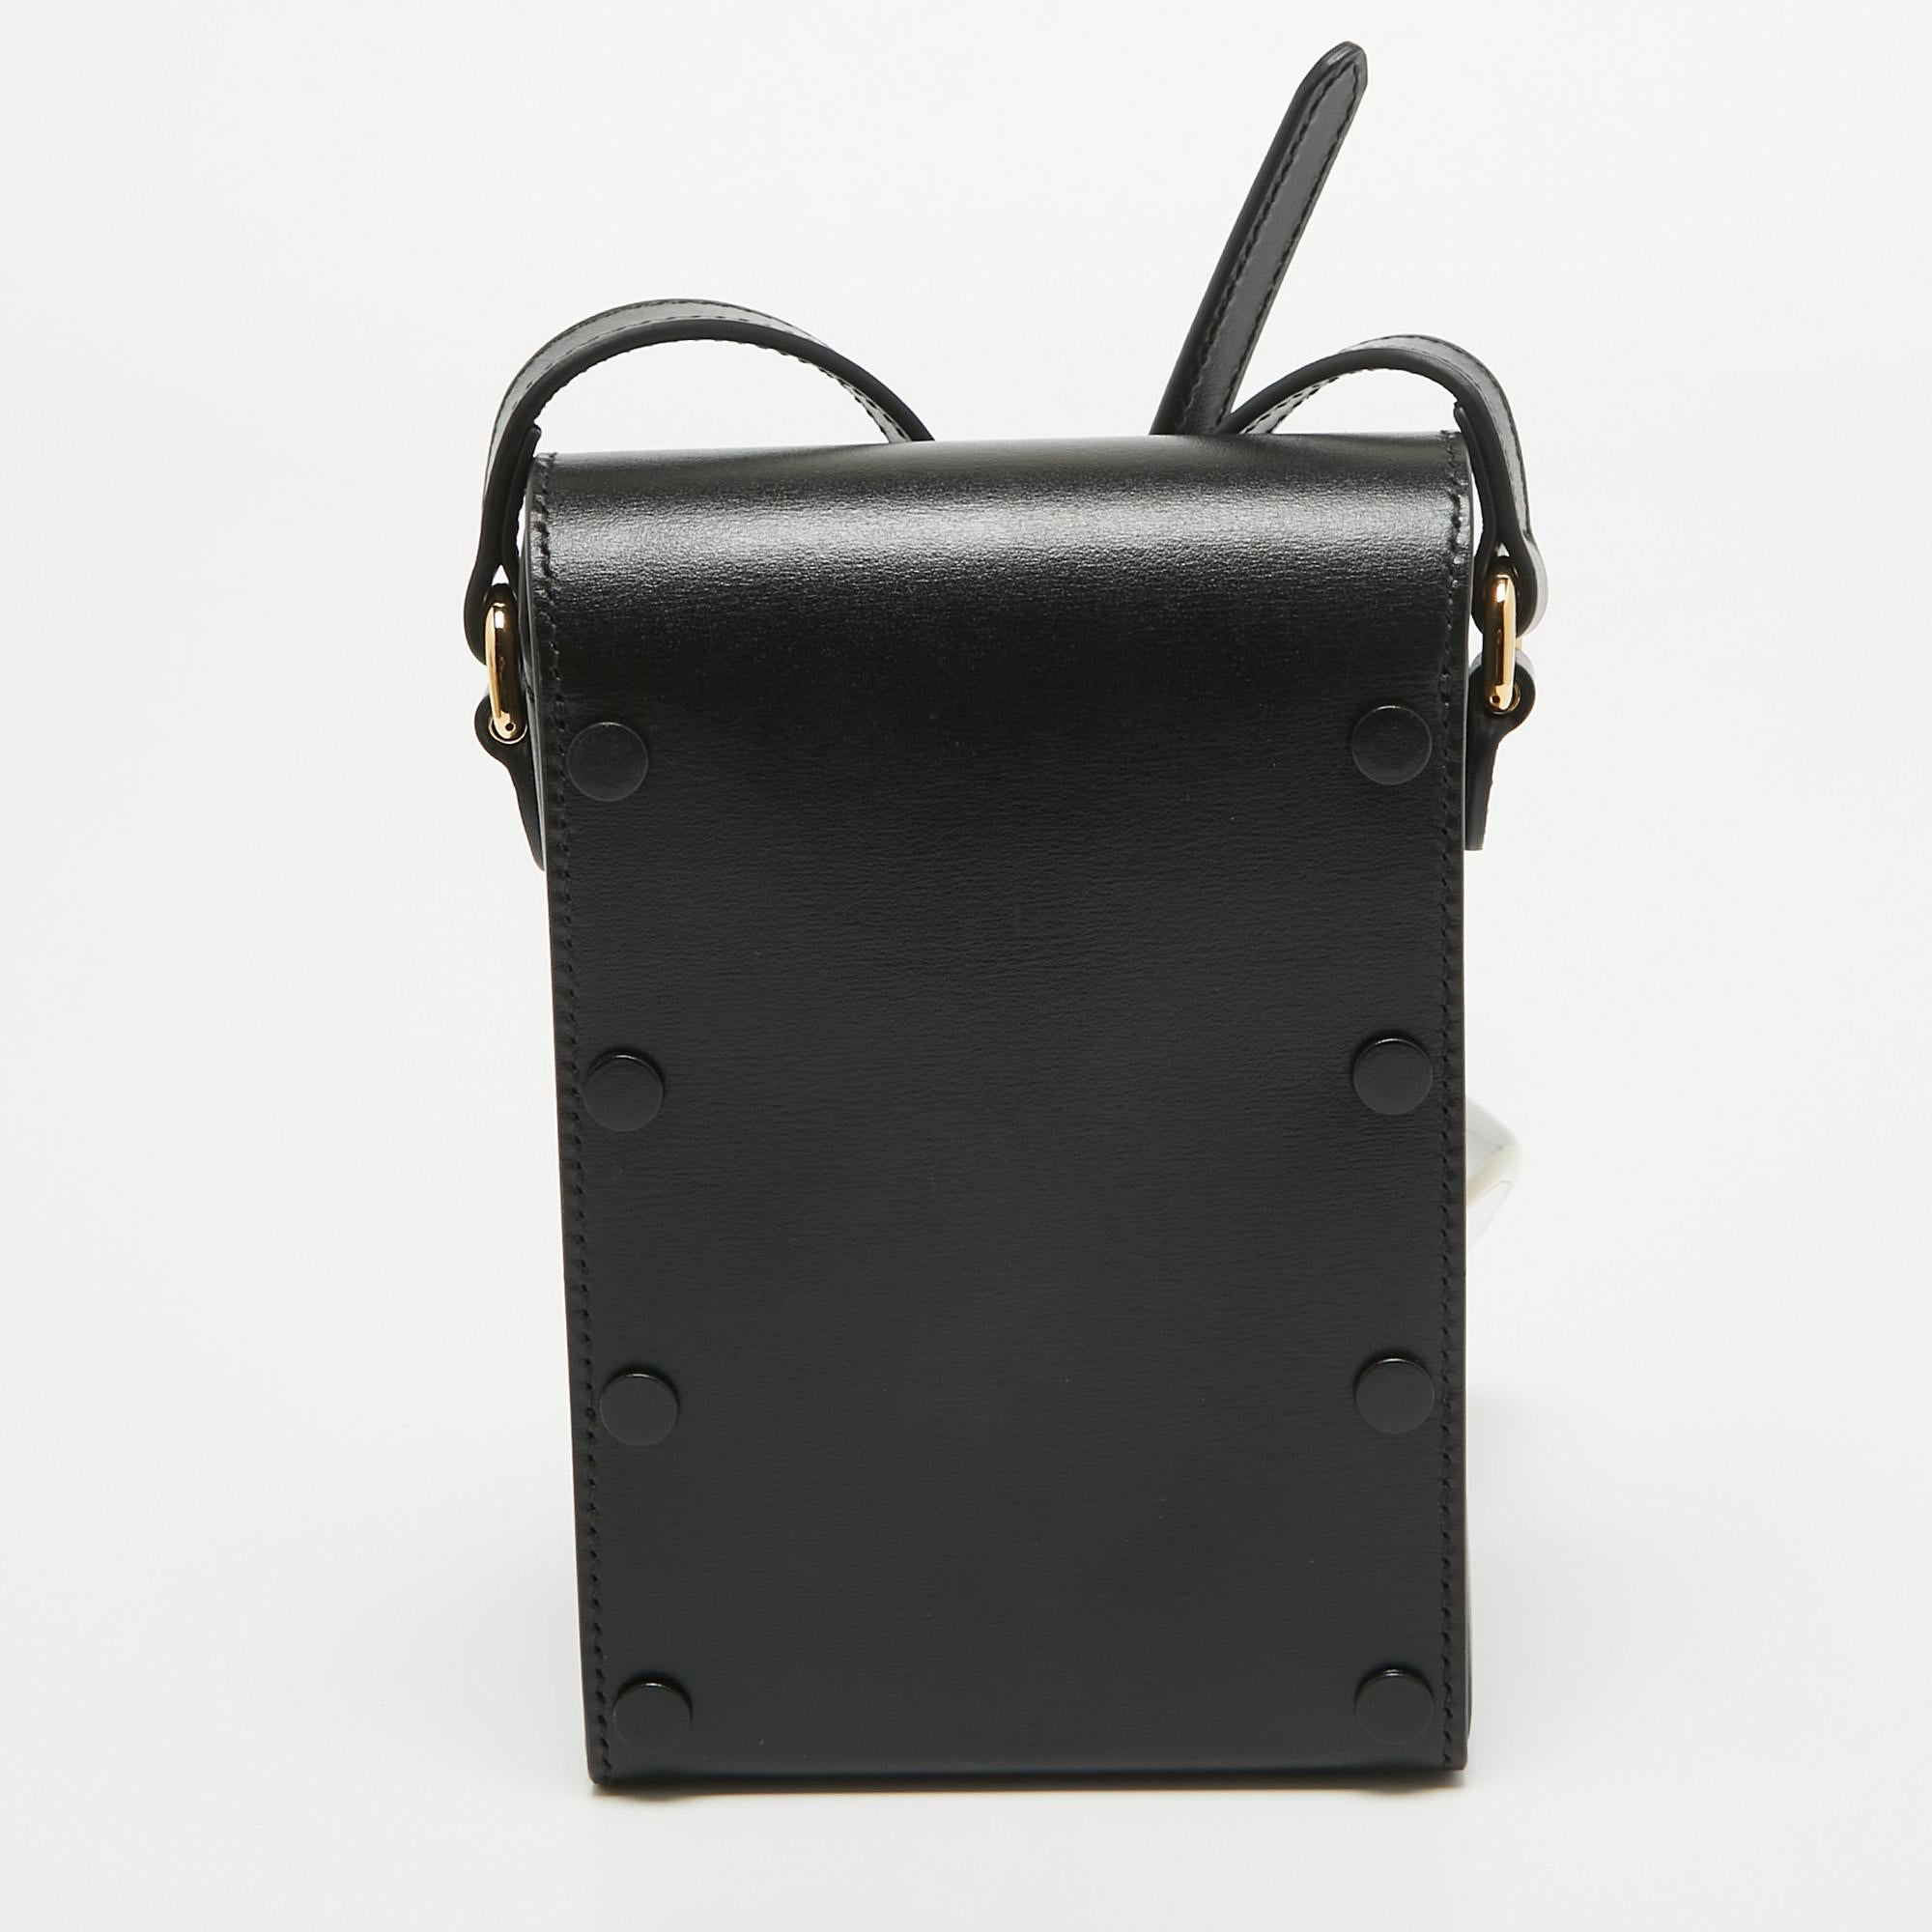 Fabriqué avec précision, ce sac à bandoulière Gucci associe des matériaux luxueux à un design impeccable, pour une allure sophistiquée où que vous alliez. Investissez dès aujourd'hui.

Comprend : Original Dustbag, Original Box, Info Booklet, Brand